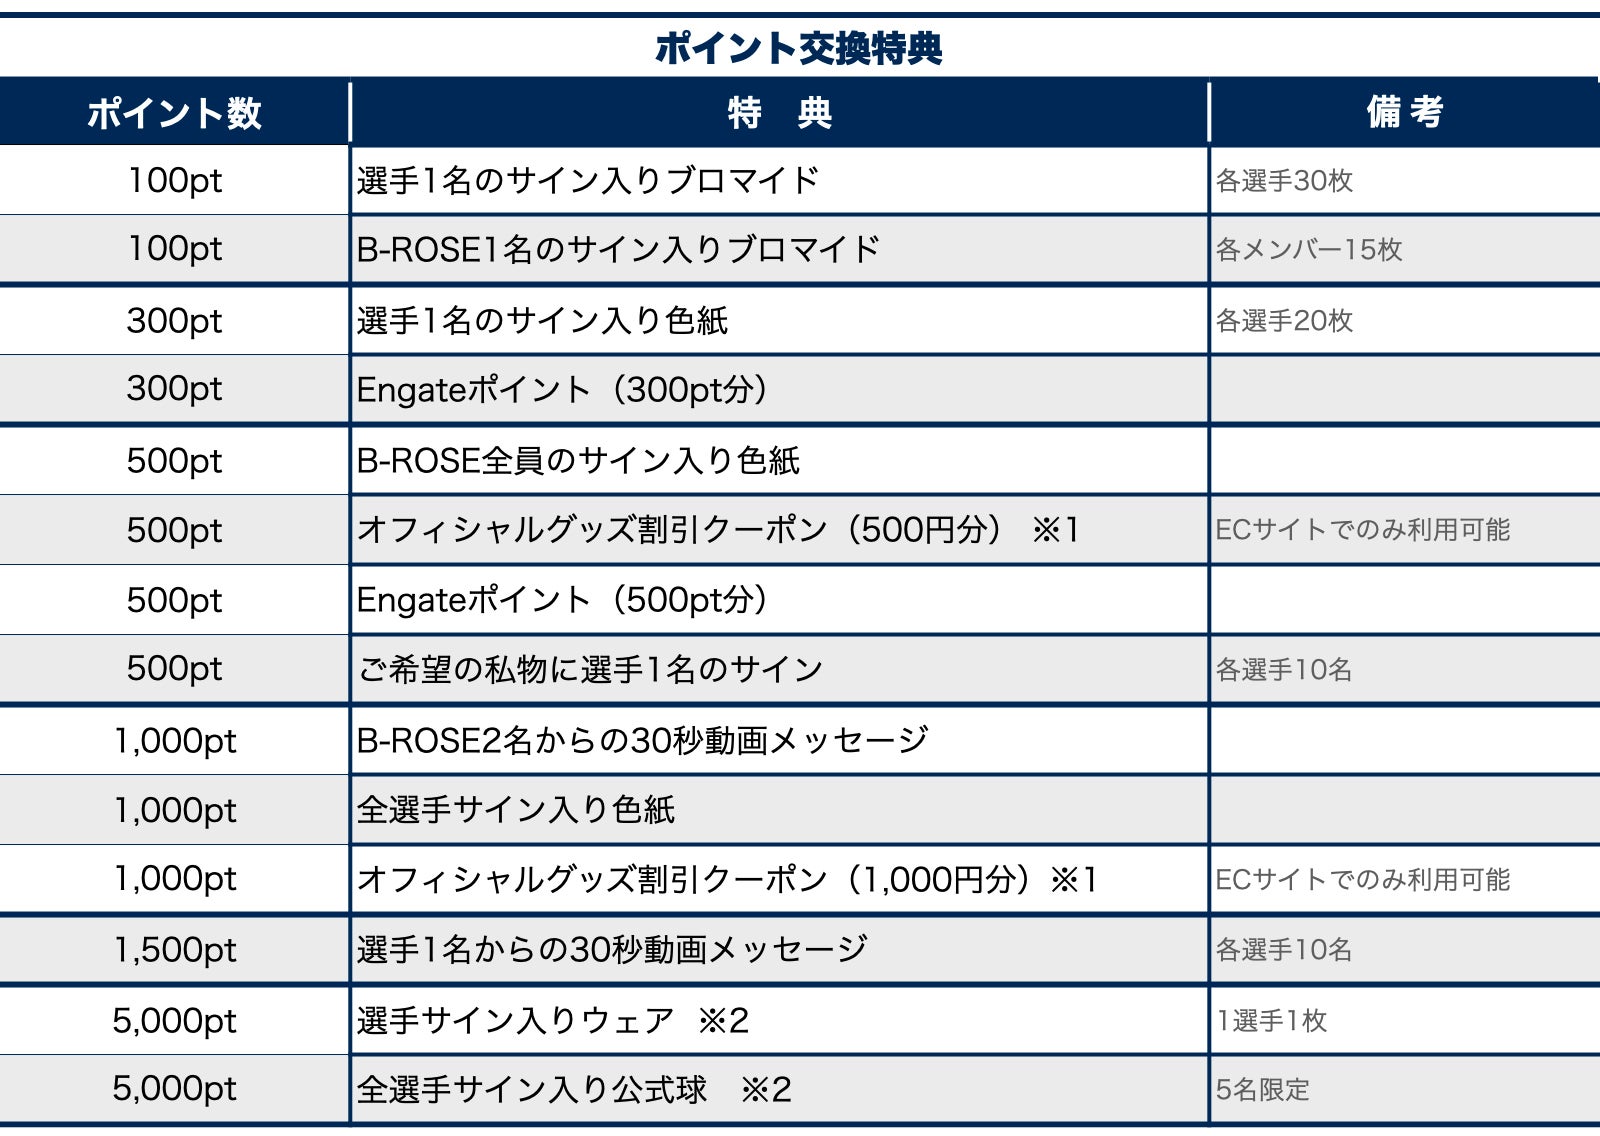 横浜ビー・コルセアーズオフィシャルファンクラブ2020-21シーズン_ポイントプログラム